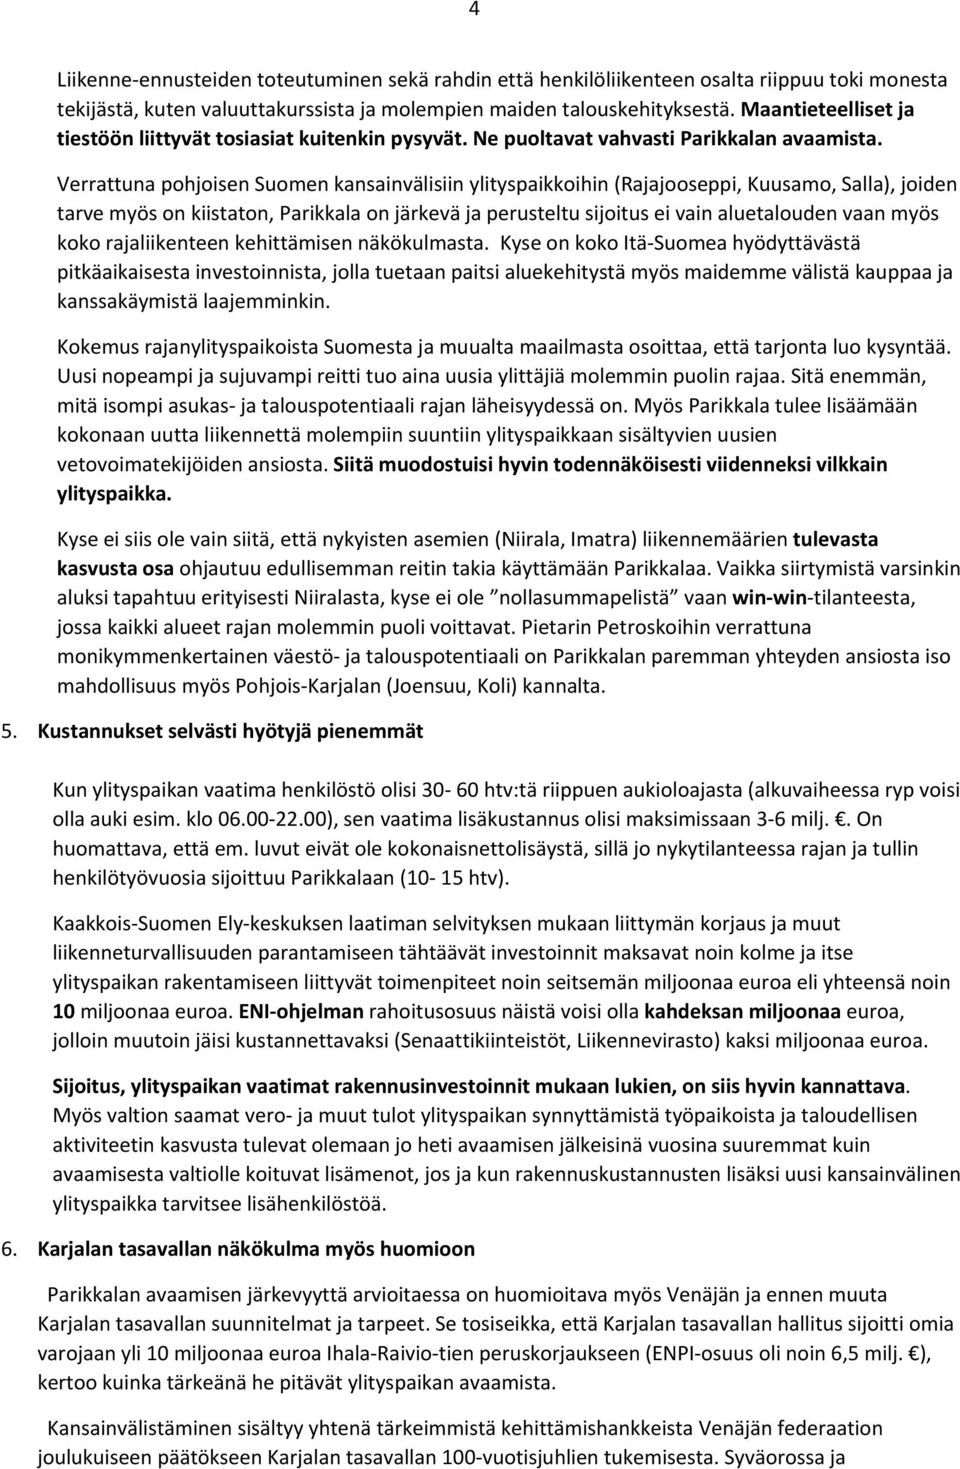 Verrattuna pohjoisen Suomen kansainvälisiin ylityspaikkoihin (Rajajooseppi, Kuusamo, Salla), joiden tarve myös on kiistaton, Parikkala on järkevä ja perusteltu sijoitus ei vain aluetalouden vaan myös